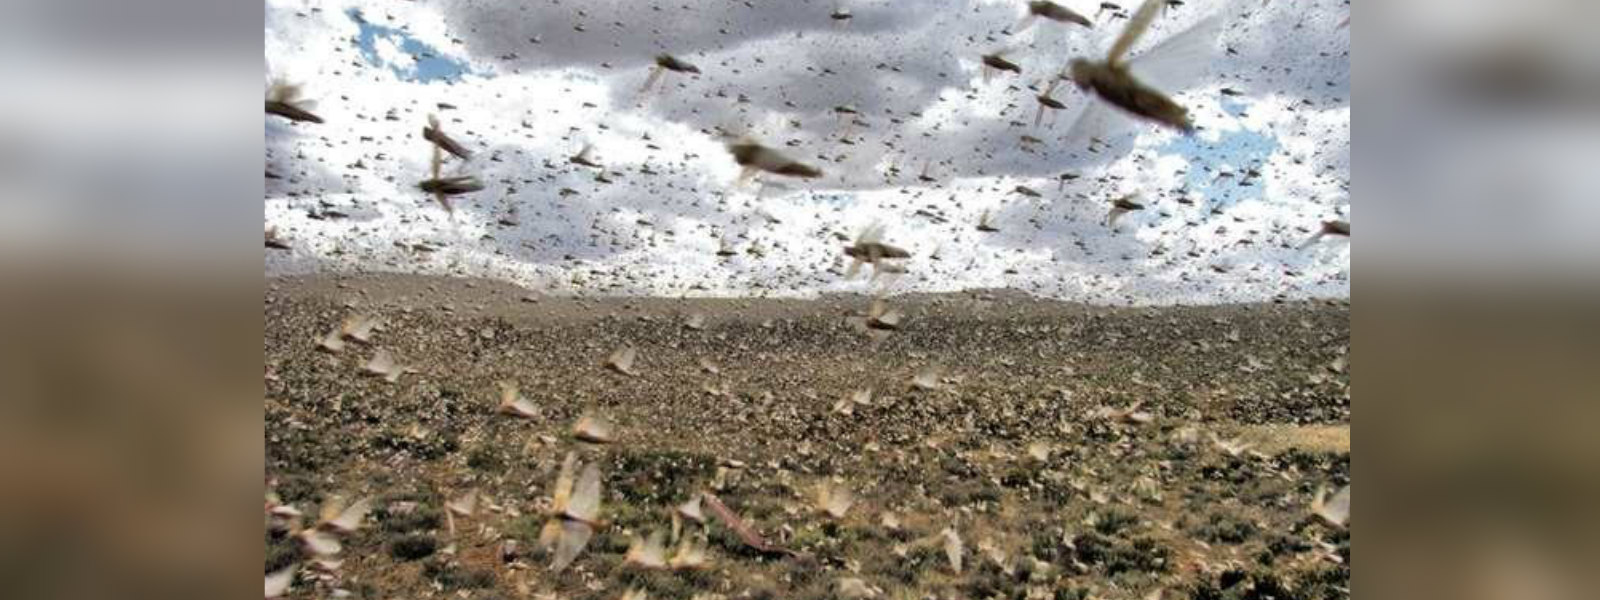 SL at risk of overseas desert locust plague